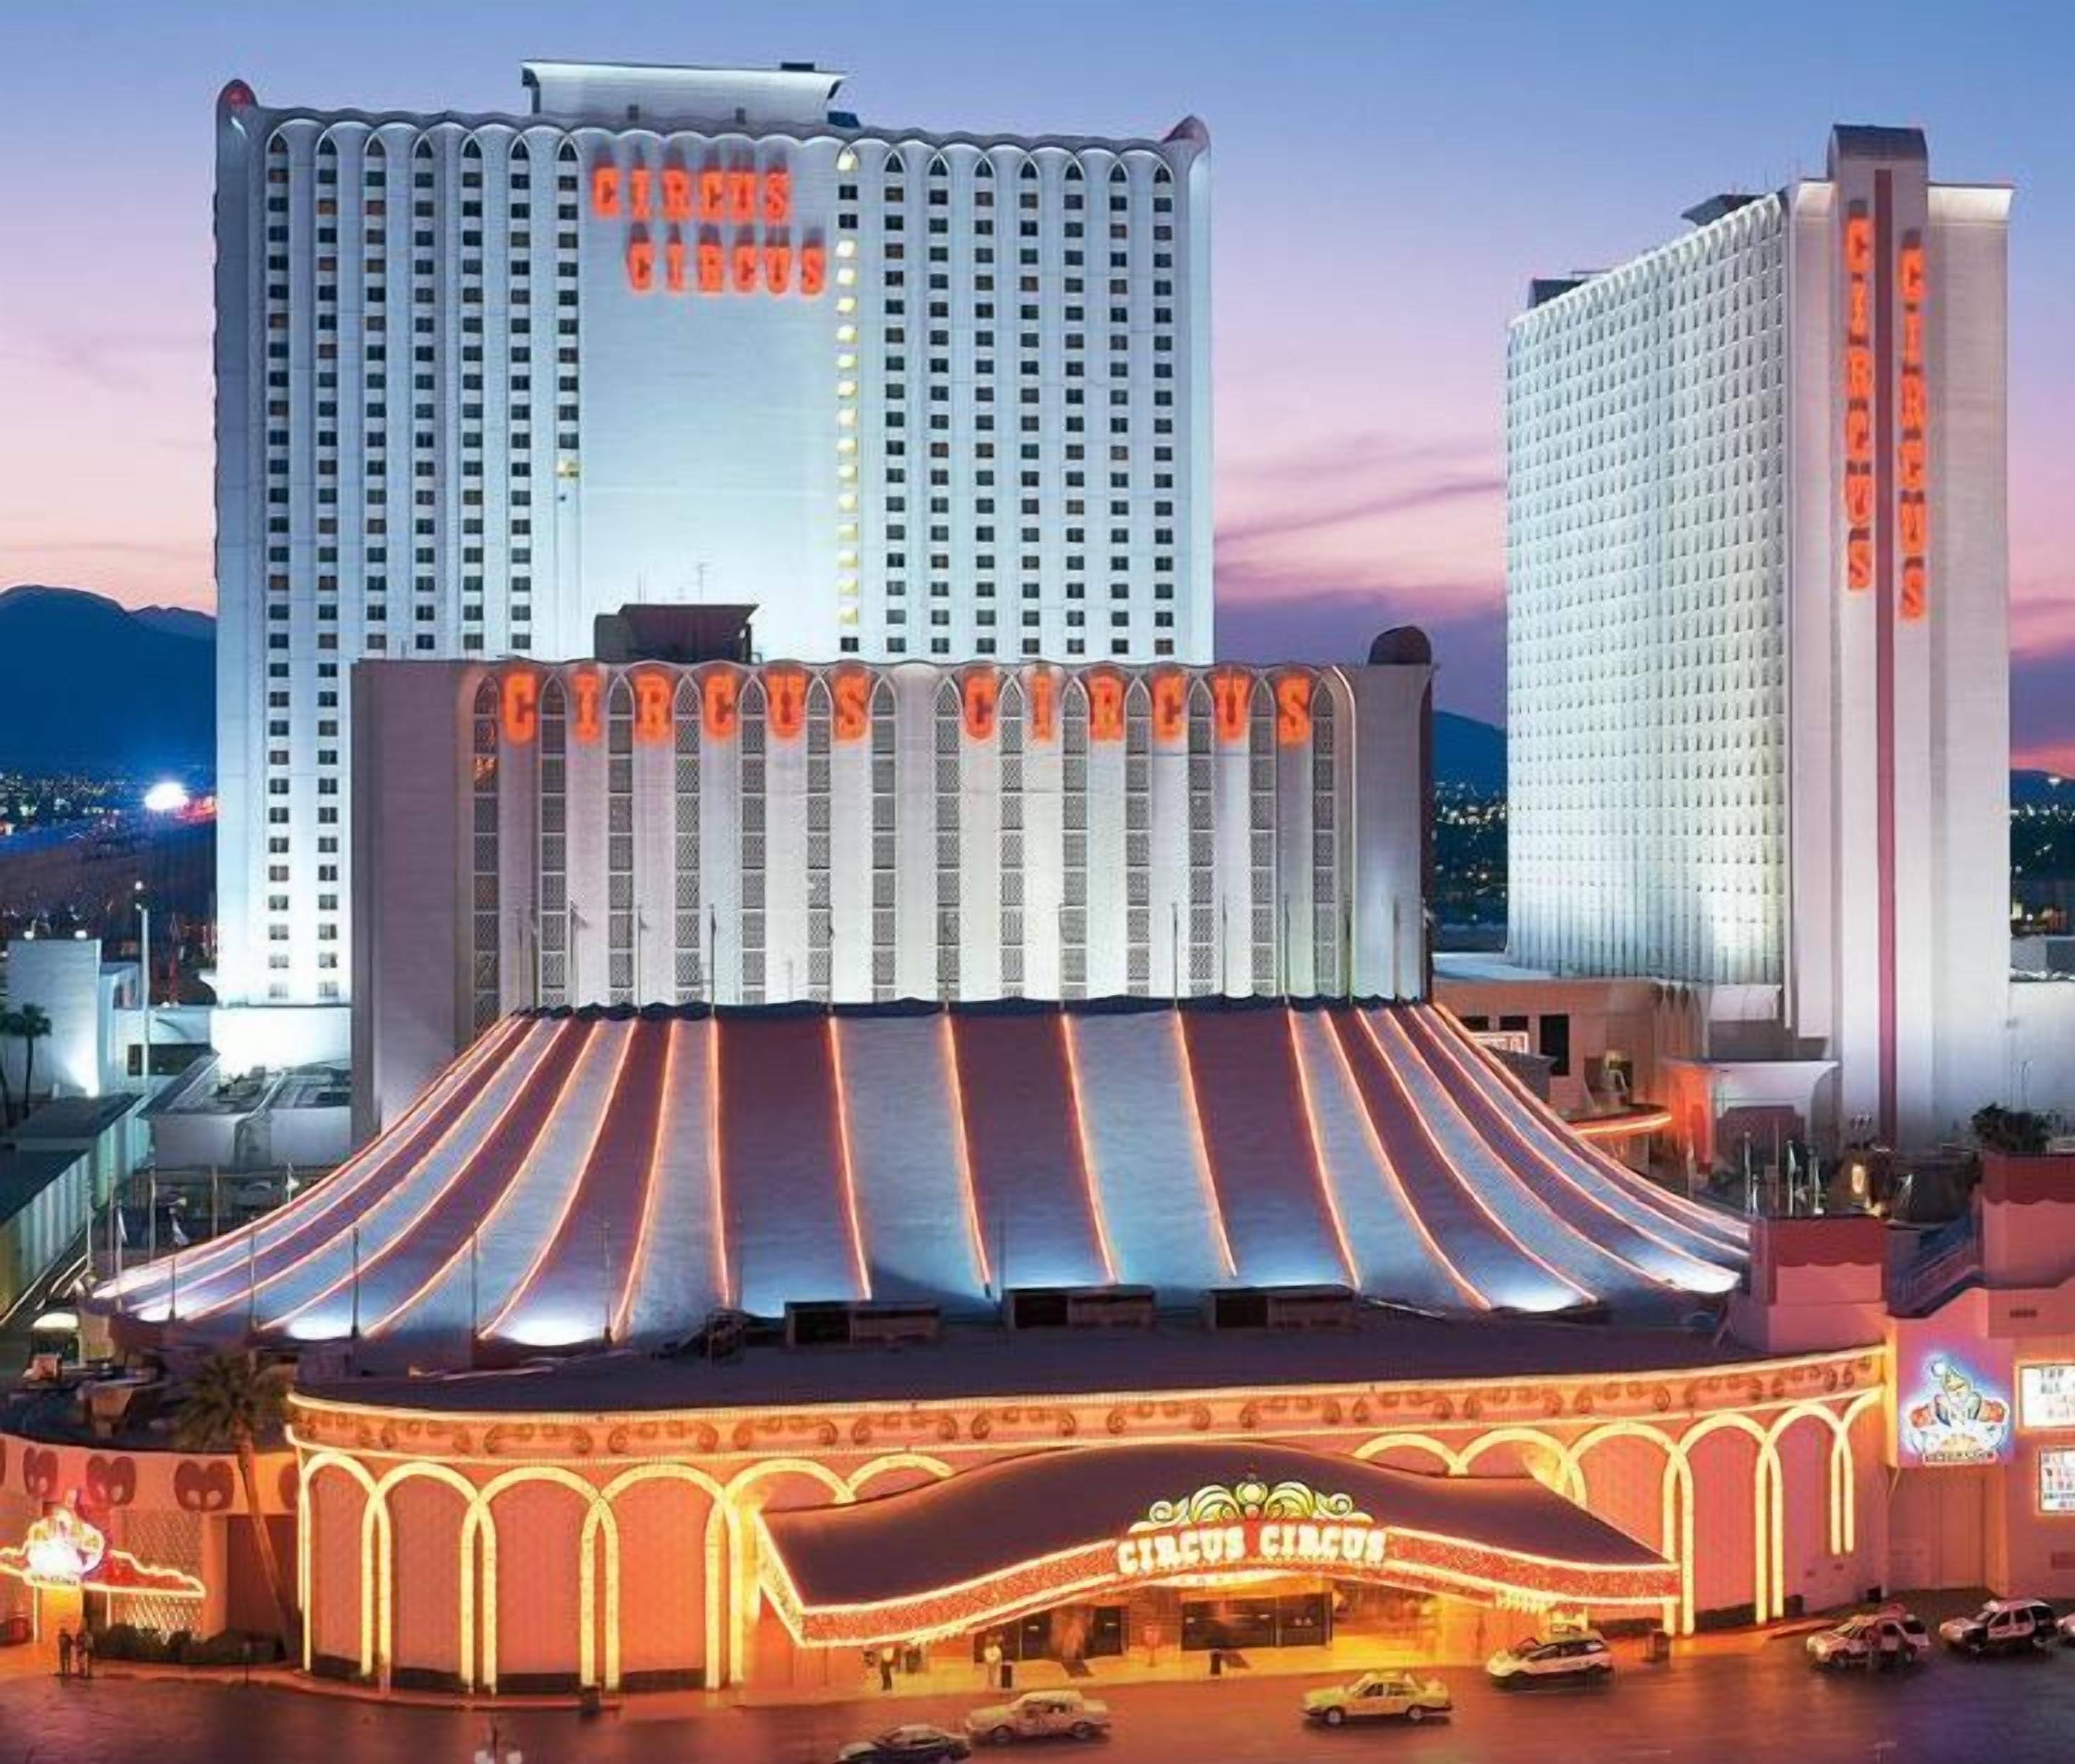 Circus Circus Hotel & Casino